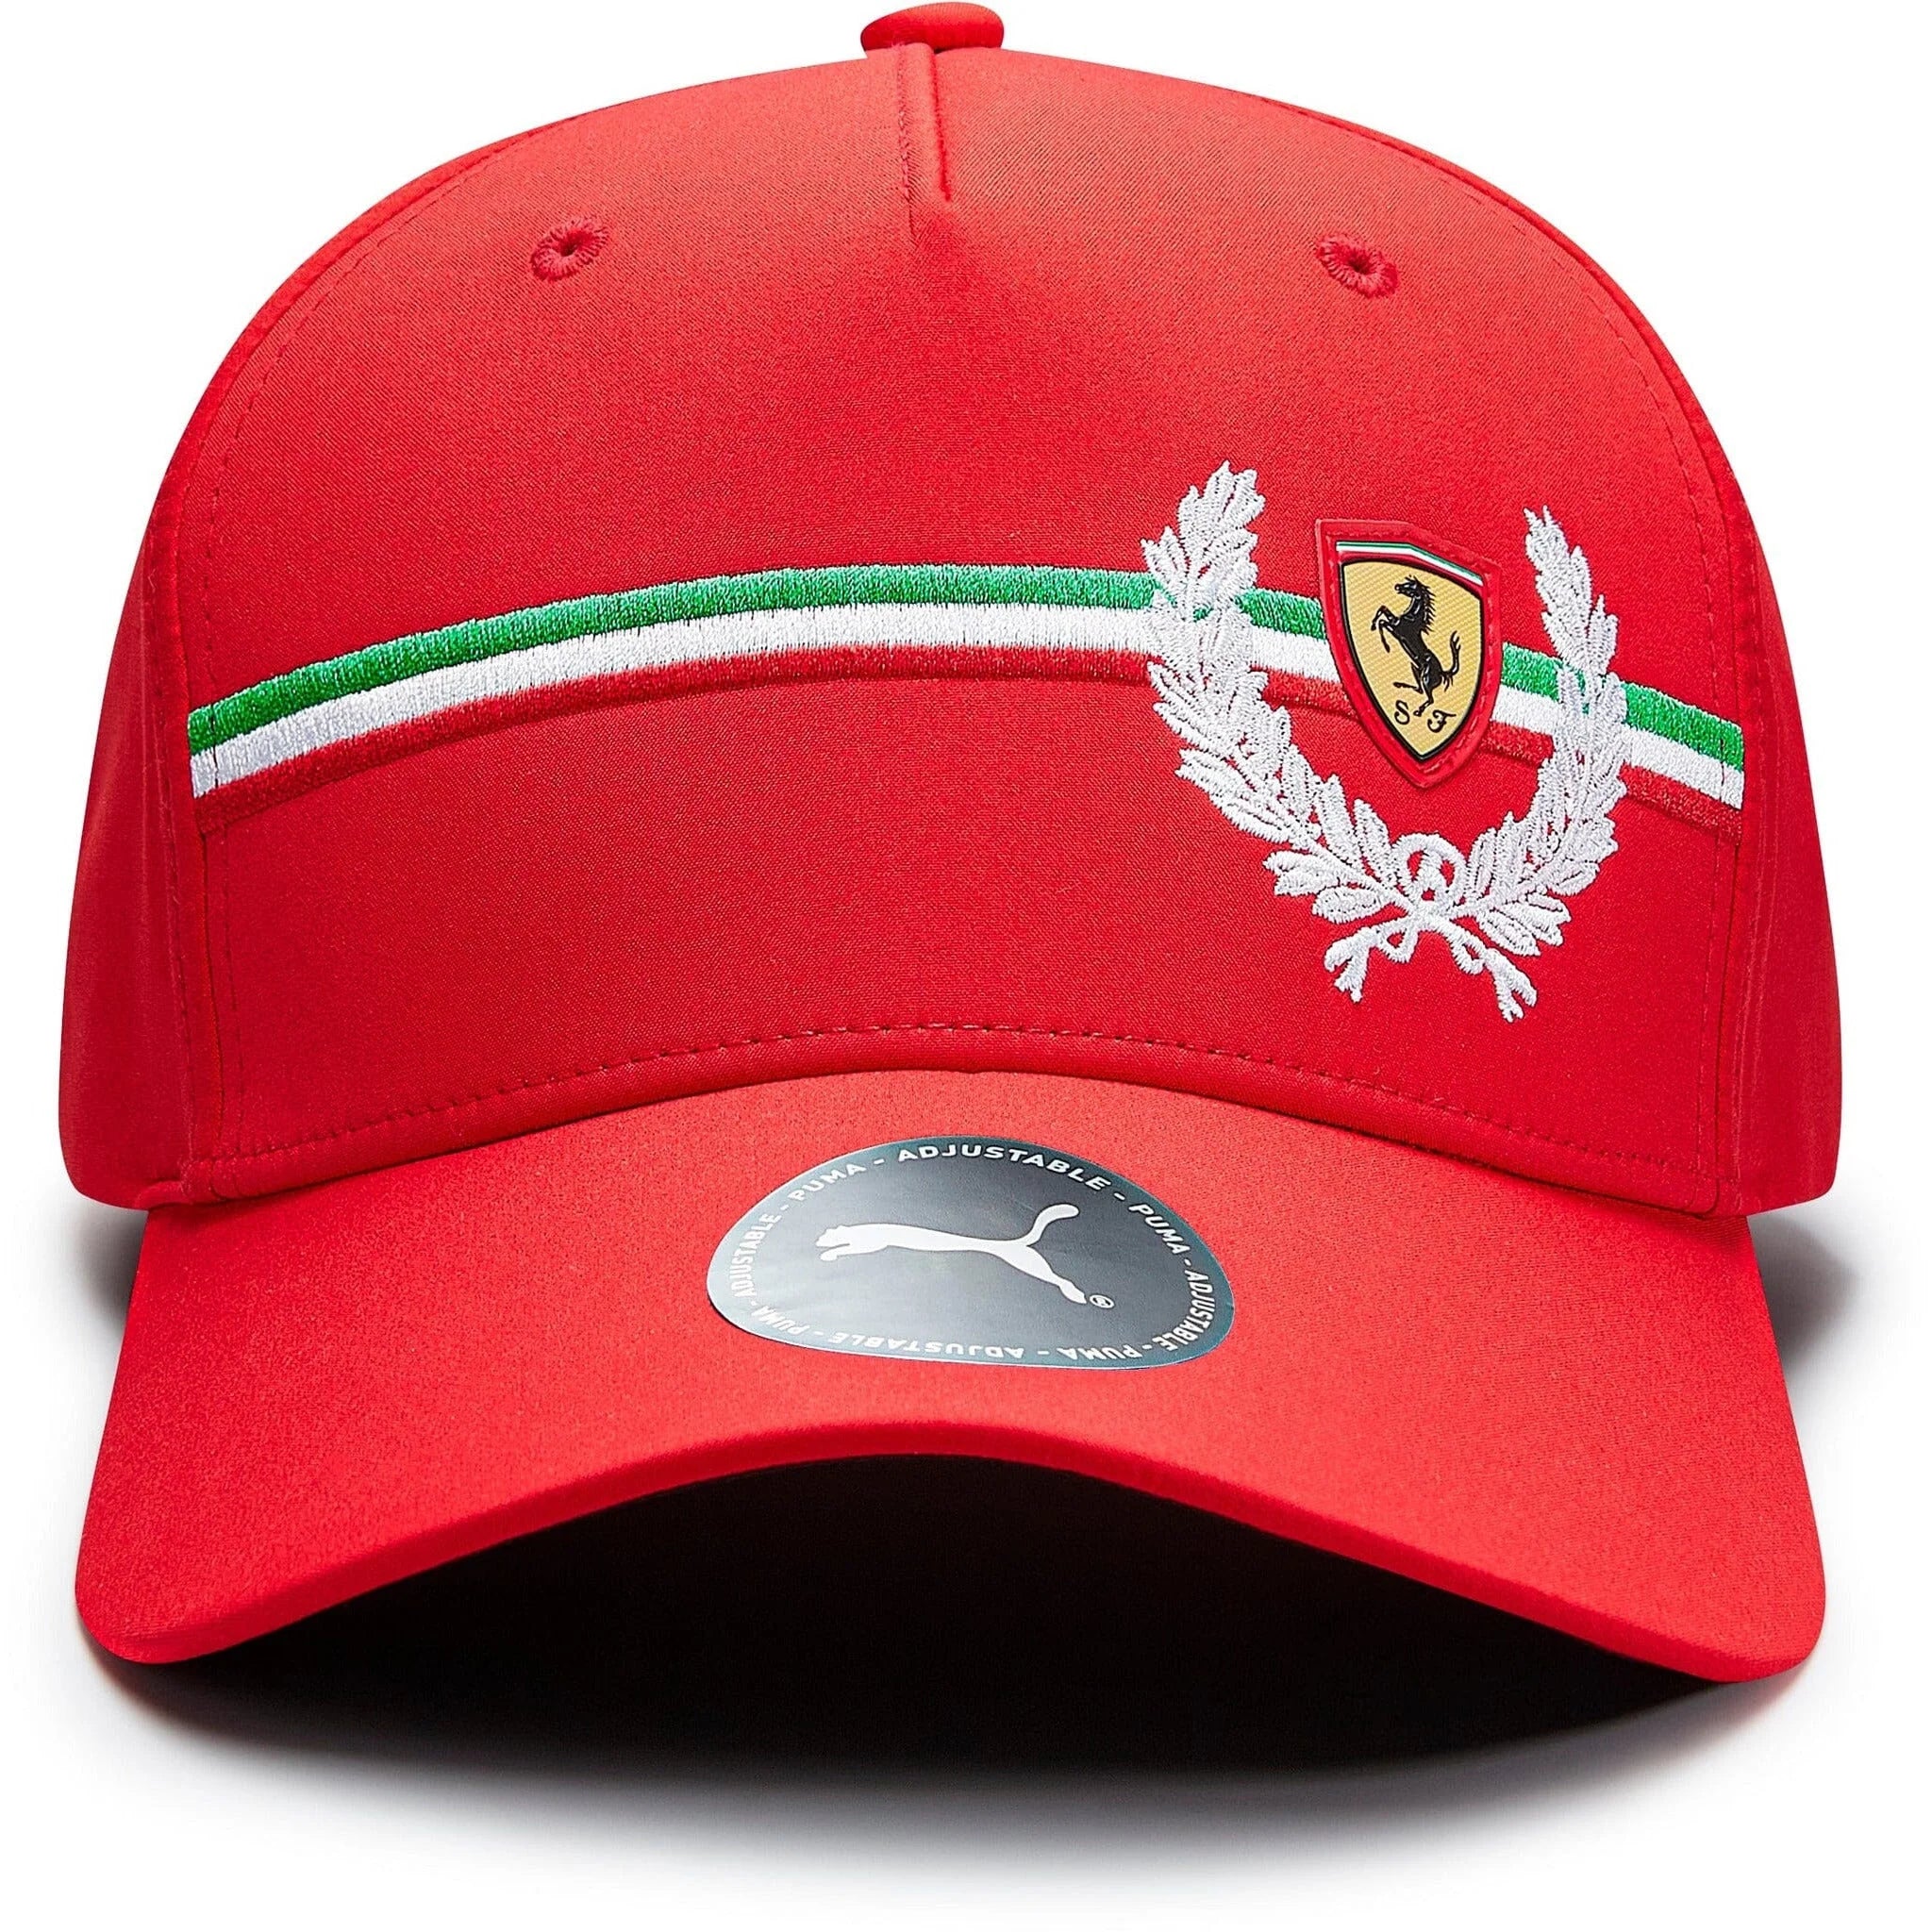 Scuderia Ferrari Italian Heritage Hat Red